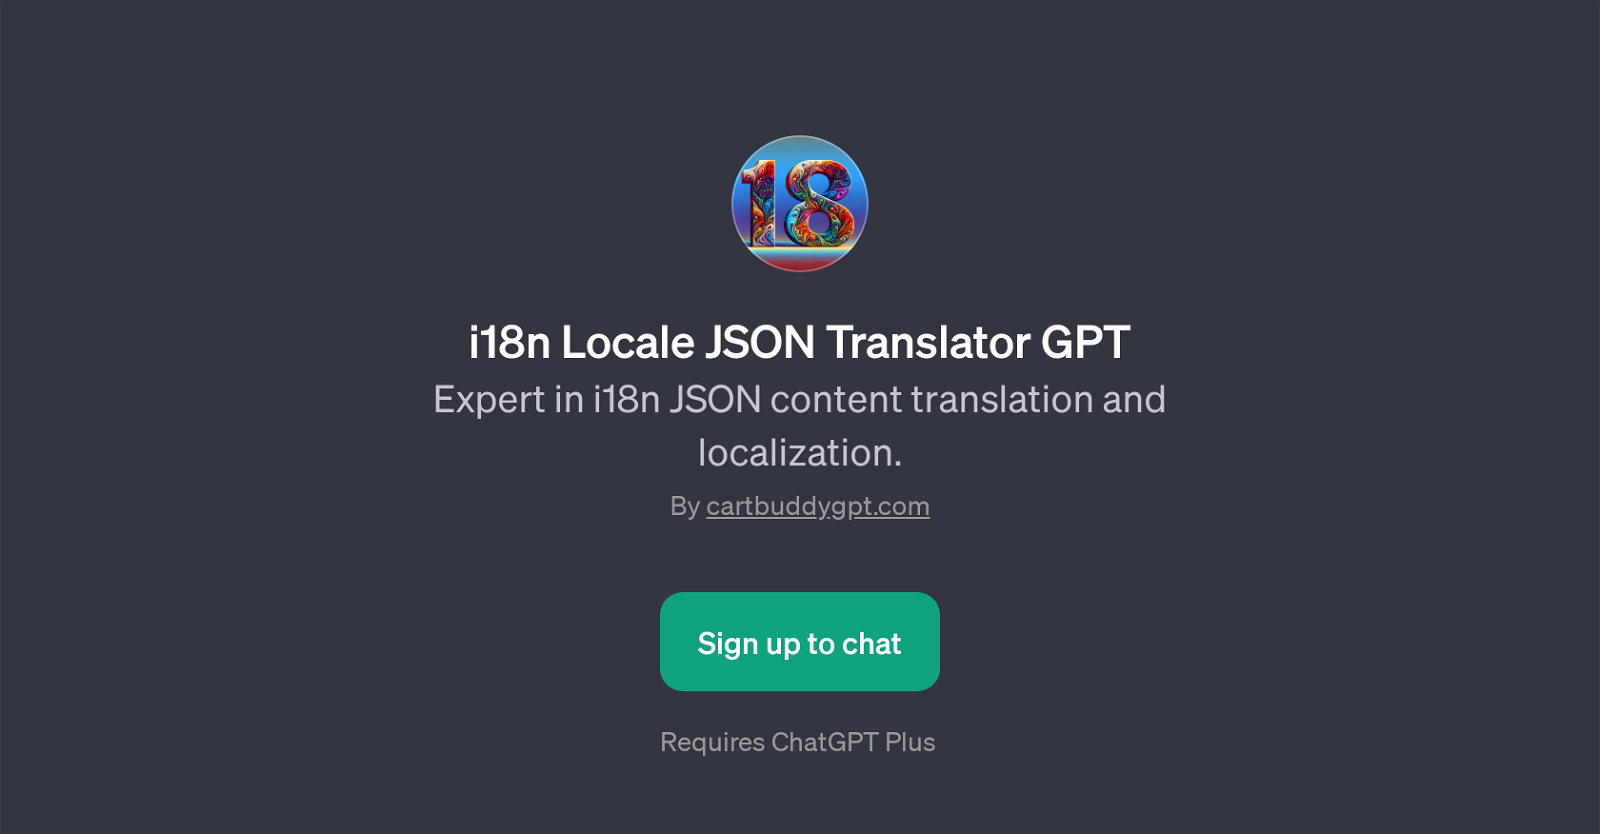 i18n Locale JSON Translator GPT website